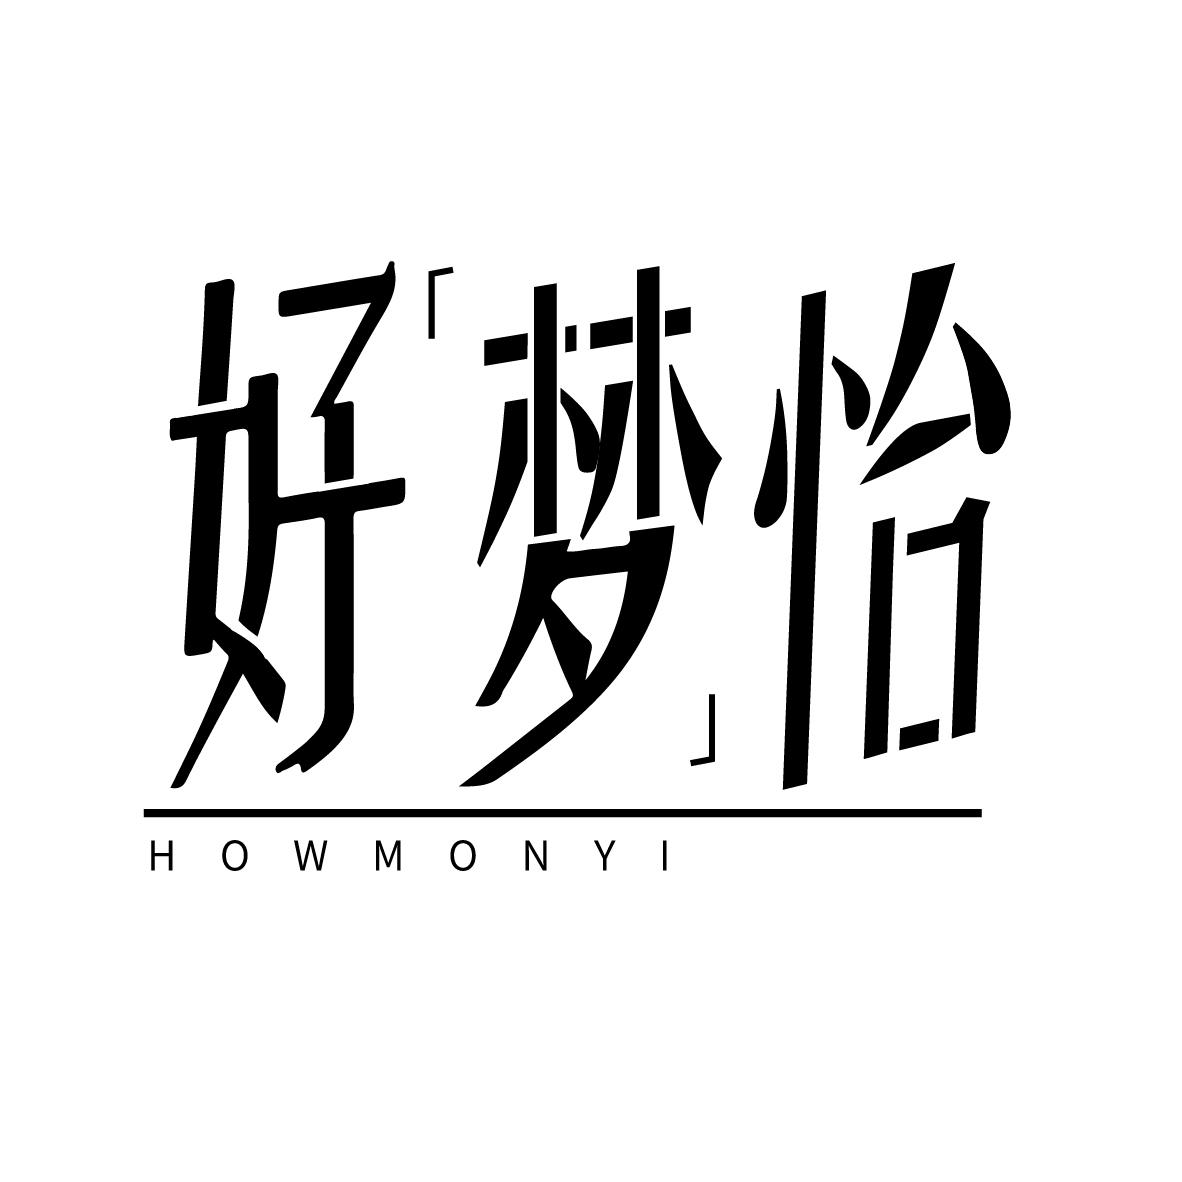  HOWMONYI